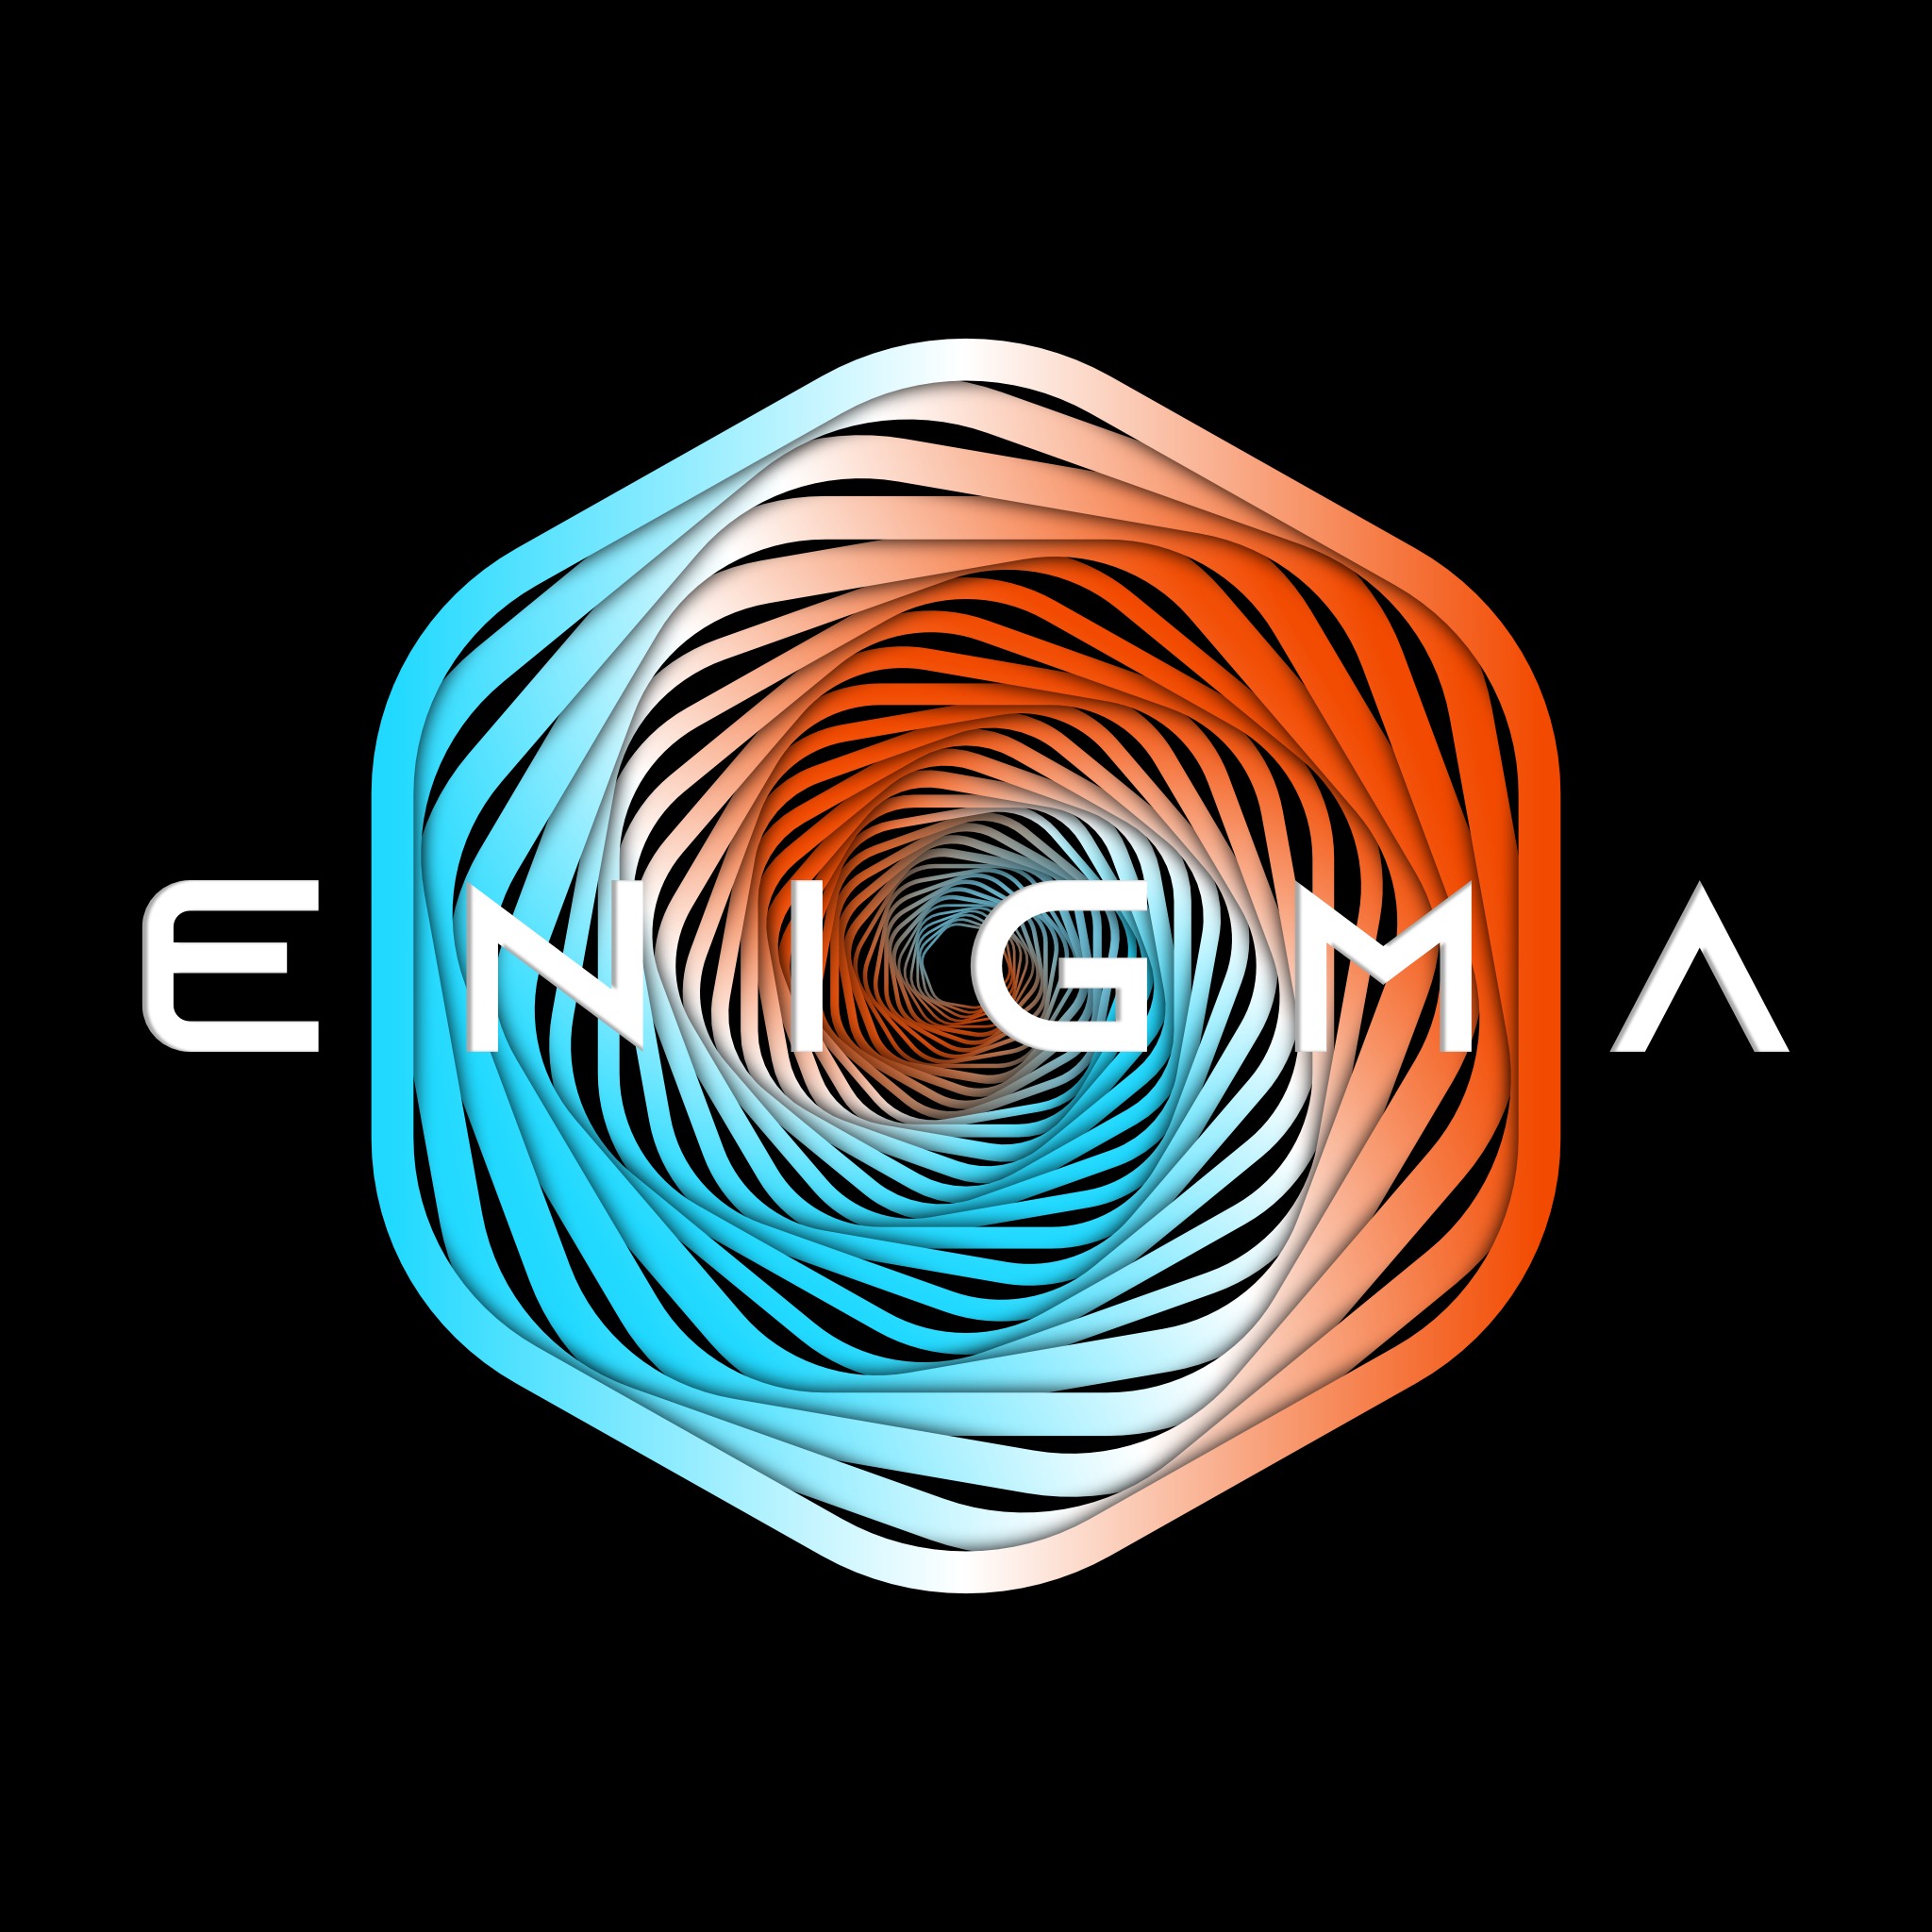 (c) Enigma-design.de